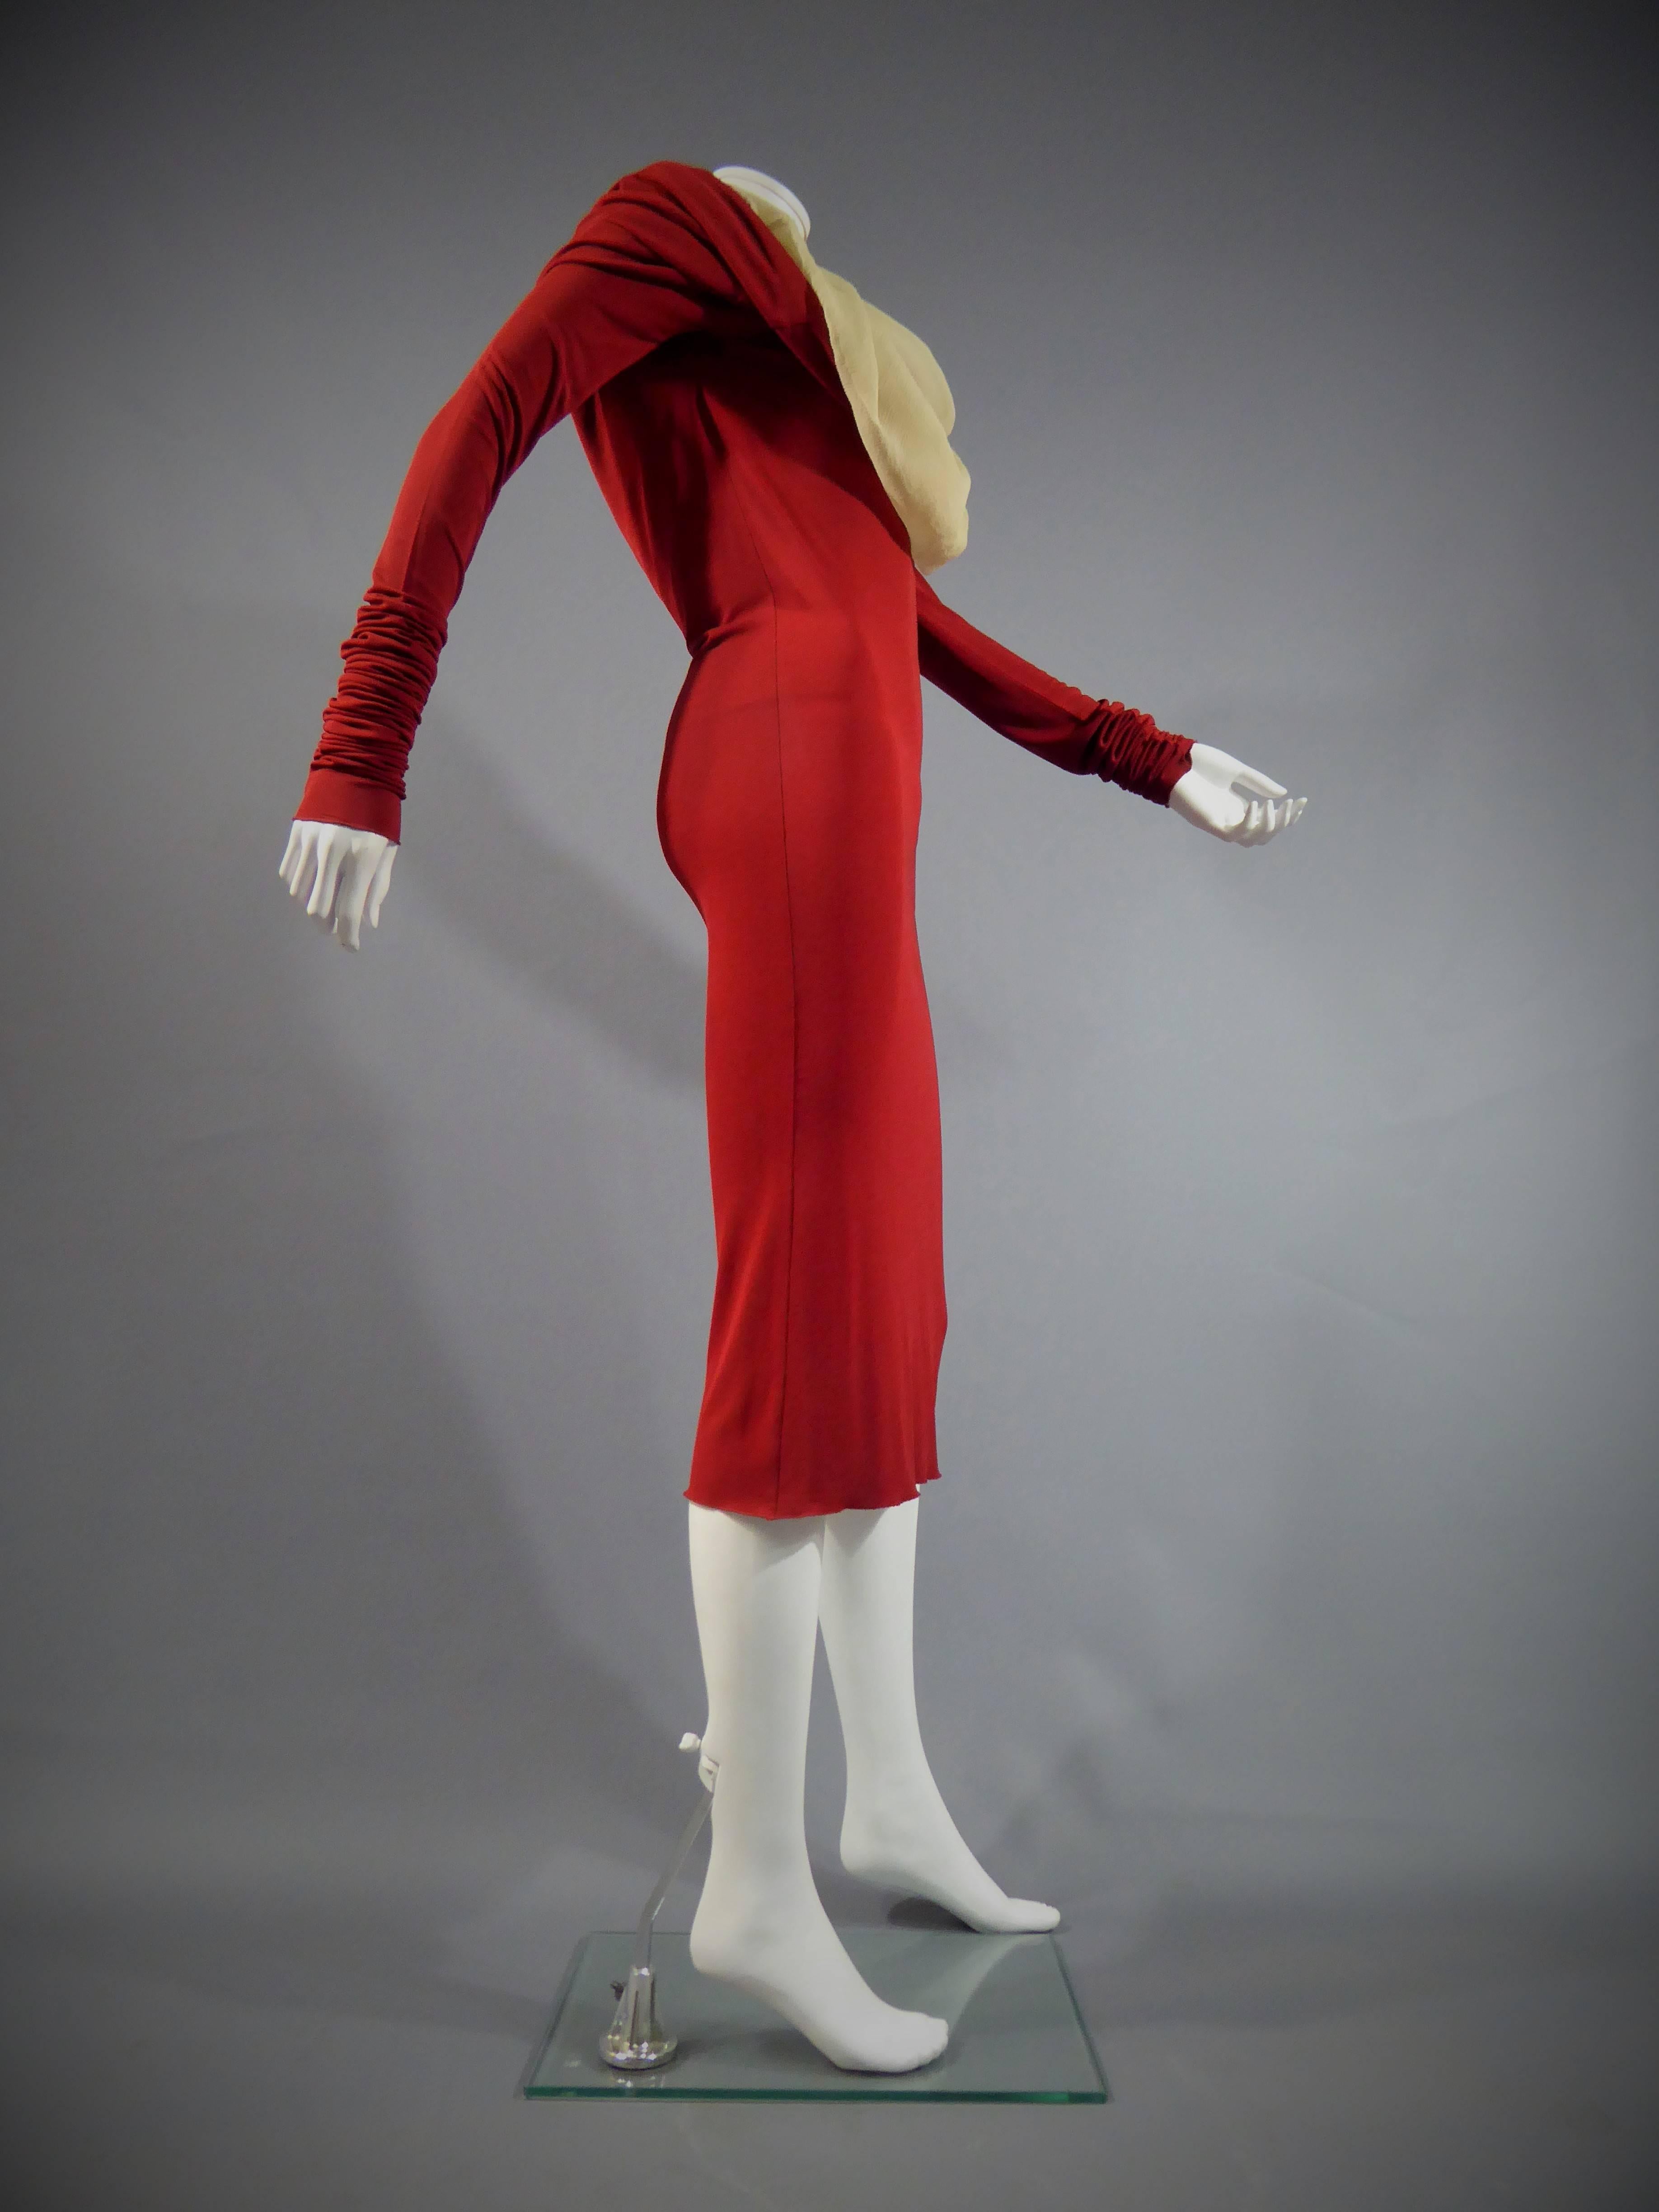 jean paul gaultier red dress